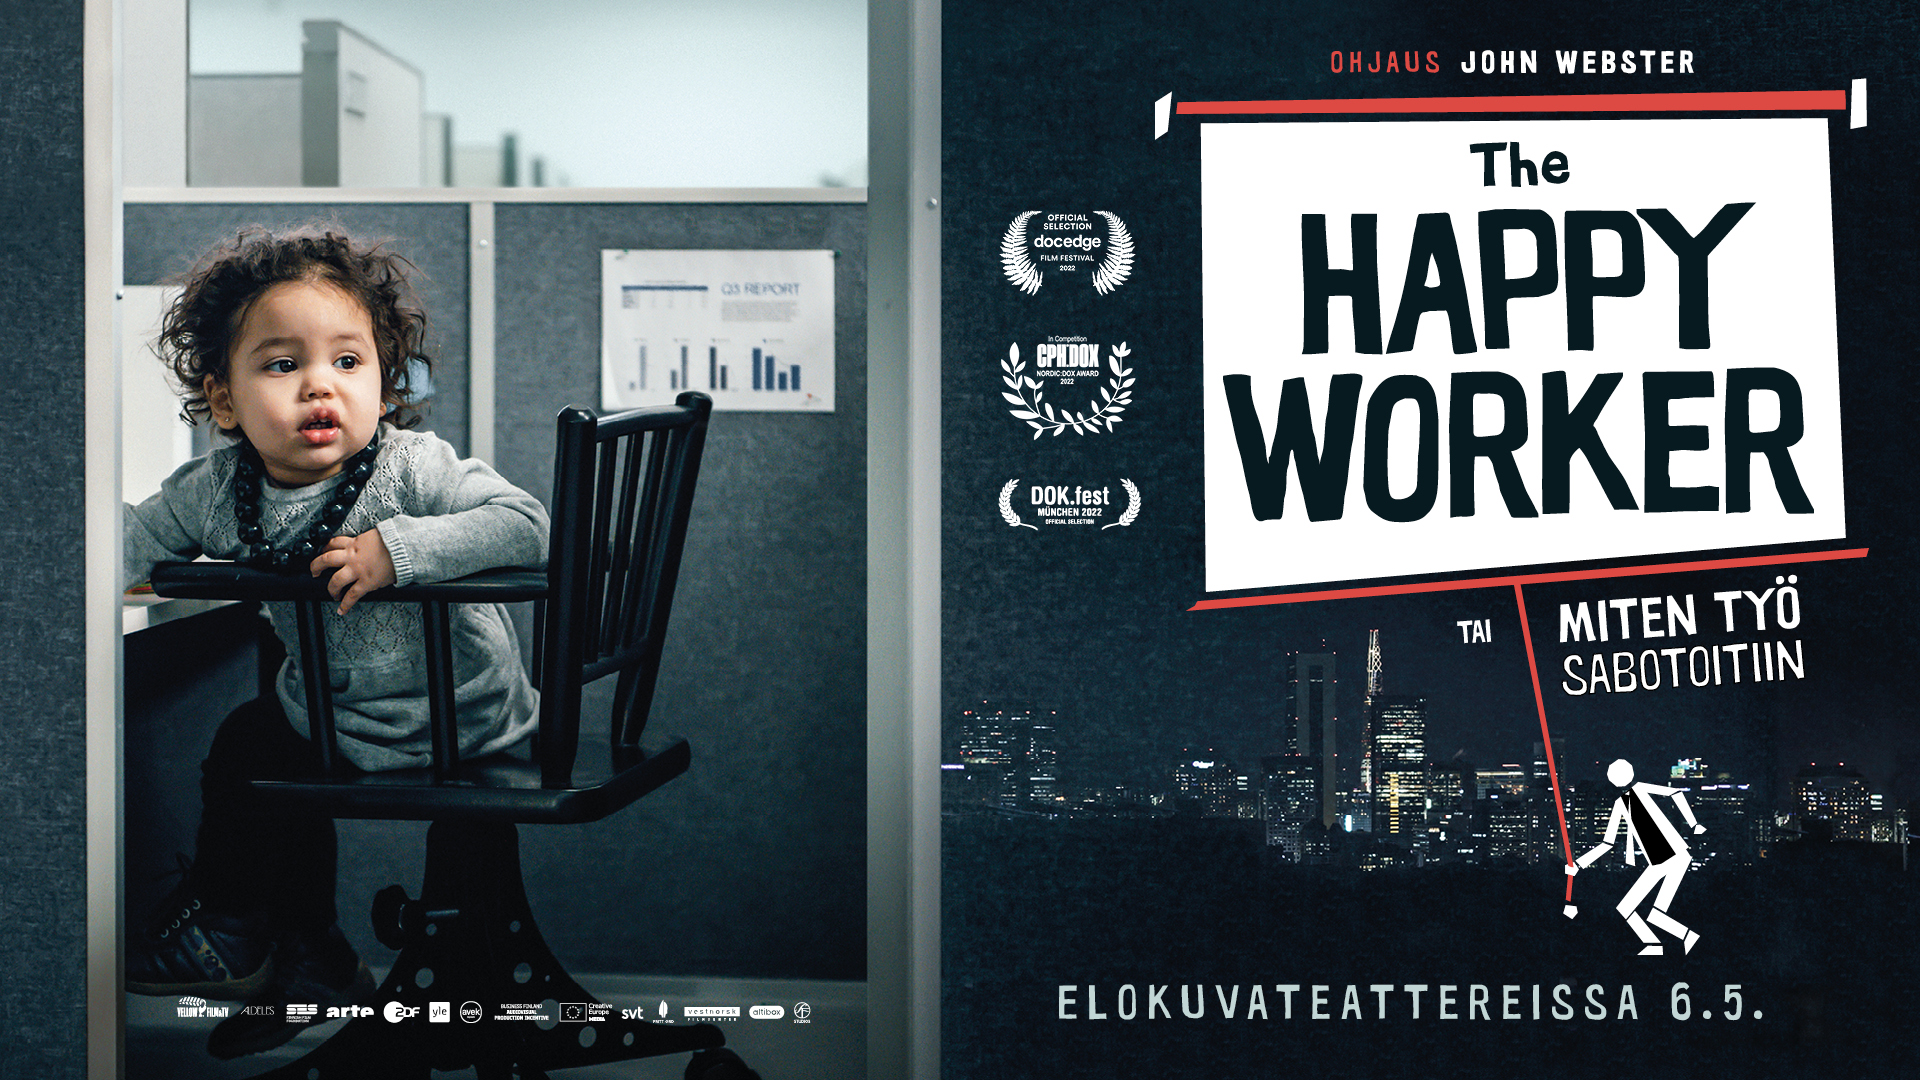 Dokumenttielokuva The Happy Worker esittelee joukon liike-elämän menestyjiä, jotka kertovat tarinansa loppuunpalamisesta